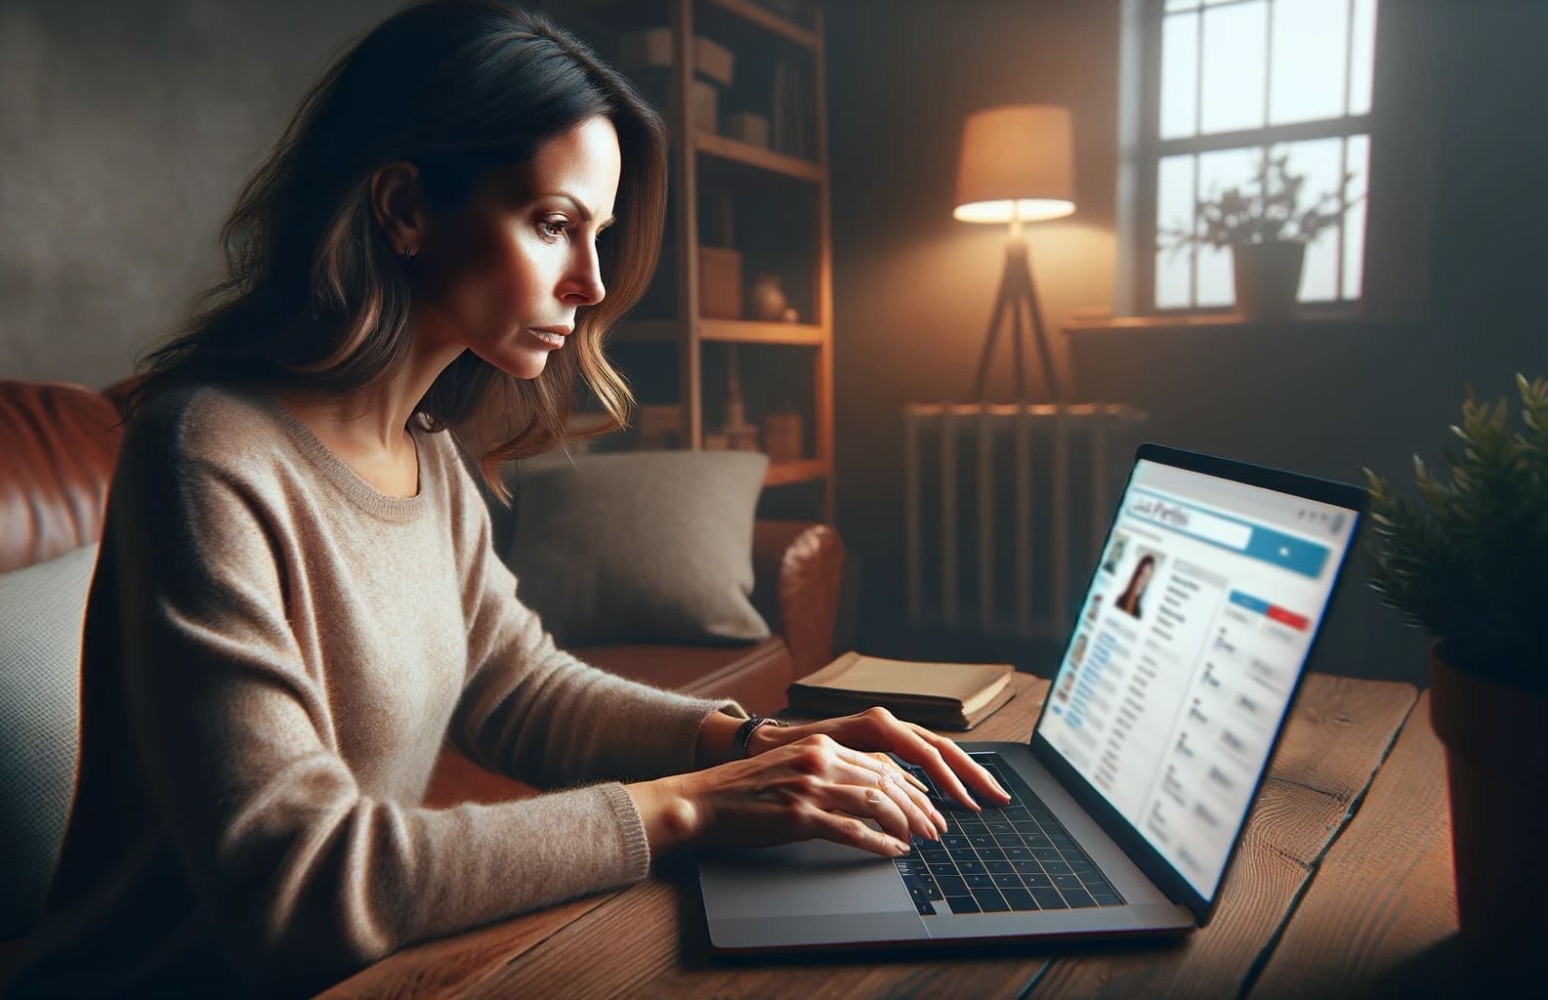 Una mujer sentada en su escritorio en un entorno doméstico, centrada en los perfiles de usuario de su ordenador portátil, mirando la pantalla en la que está abierta una aplicación móvil de búsqueda de personas